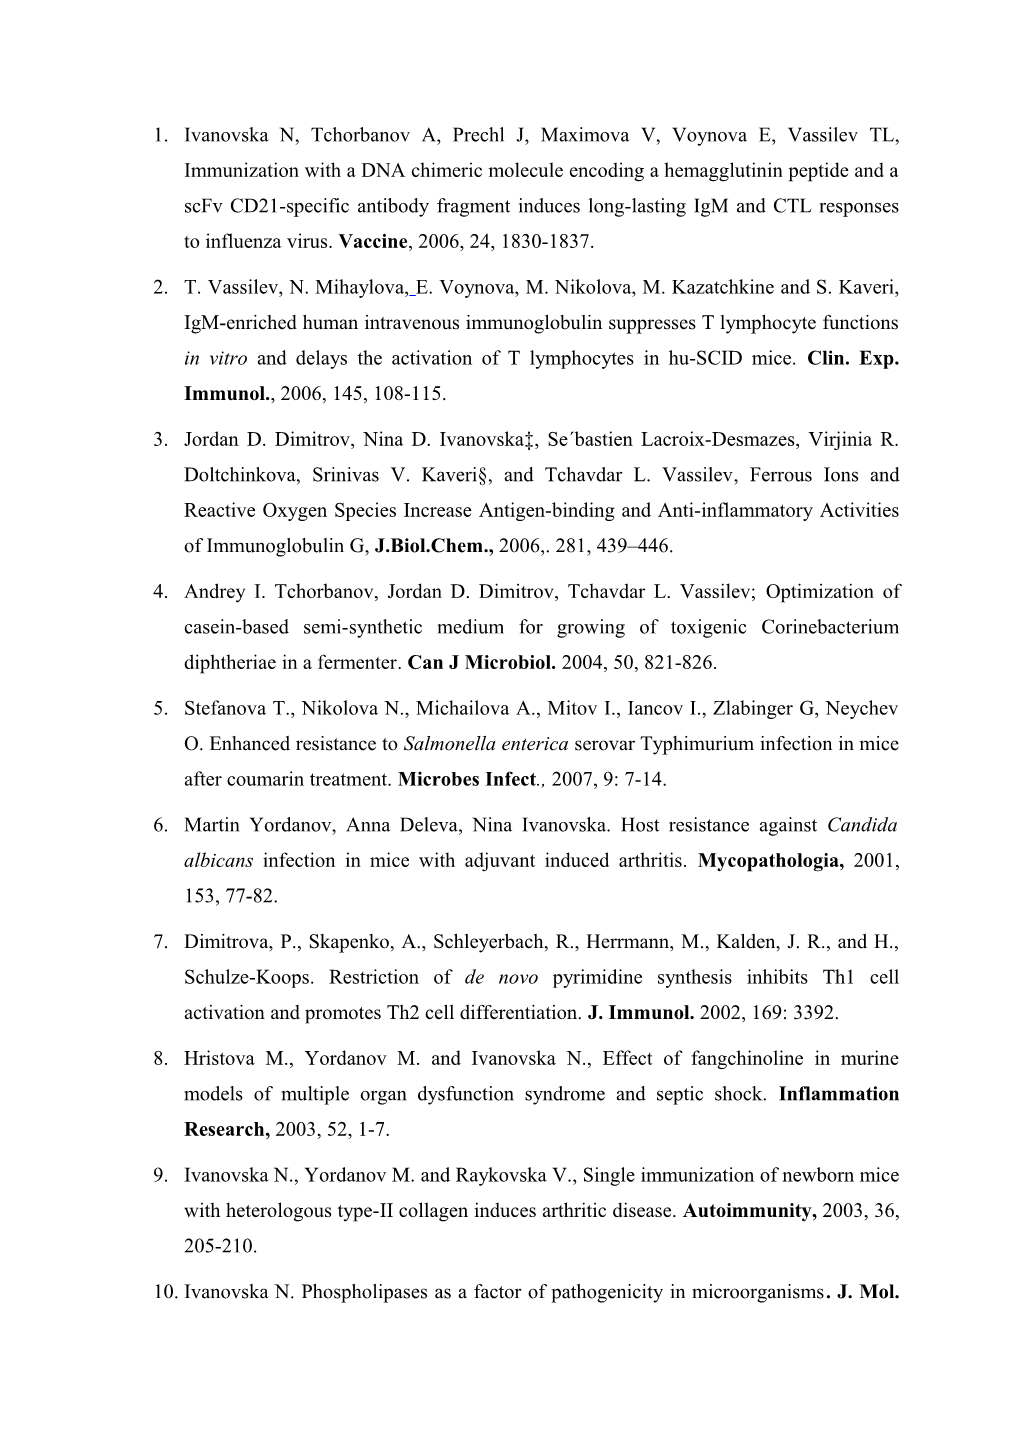 Ivanovska N, Tchorbanov A, Prechl J, Maximova V, Voynova E, Vassilev TL, Immunization With